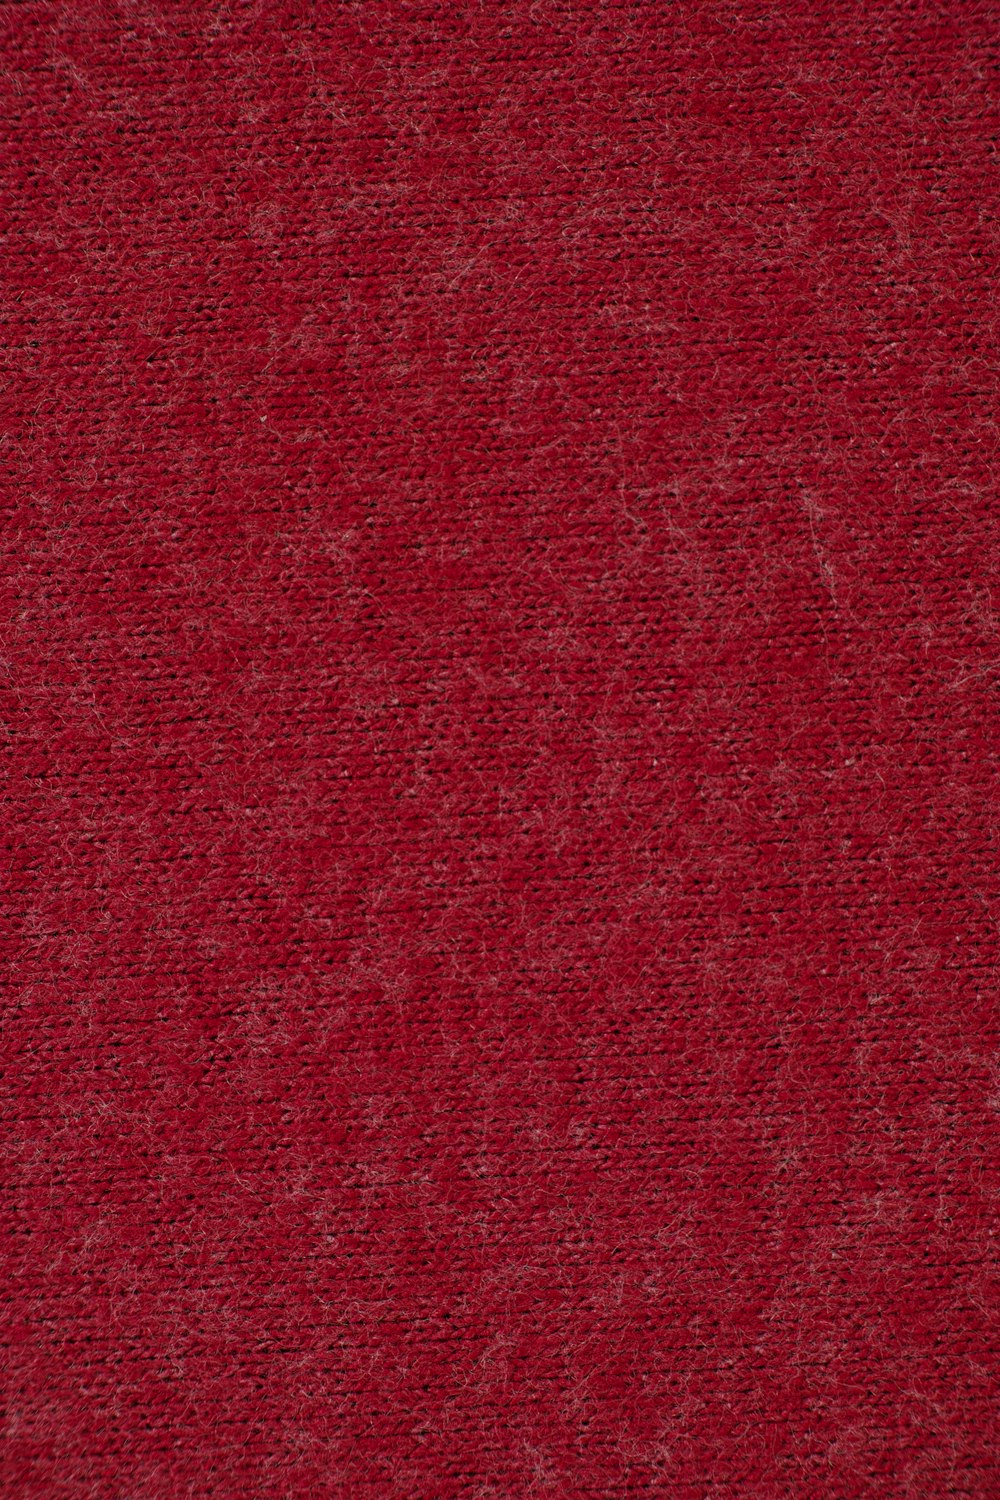 textil rojo en primer plano